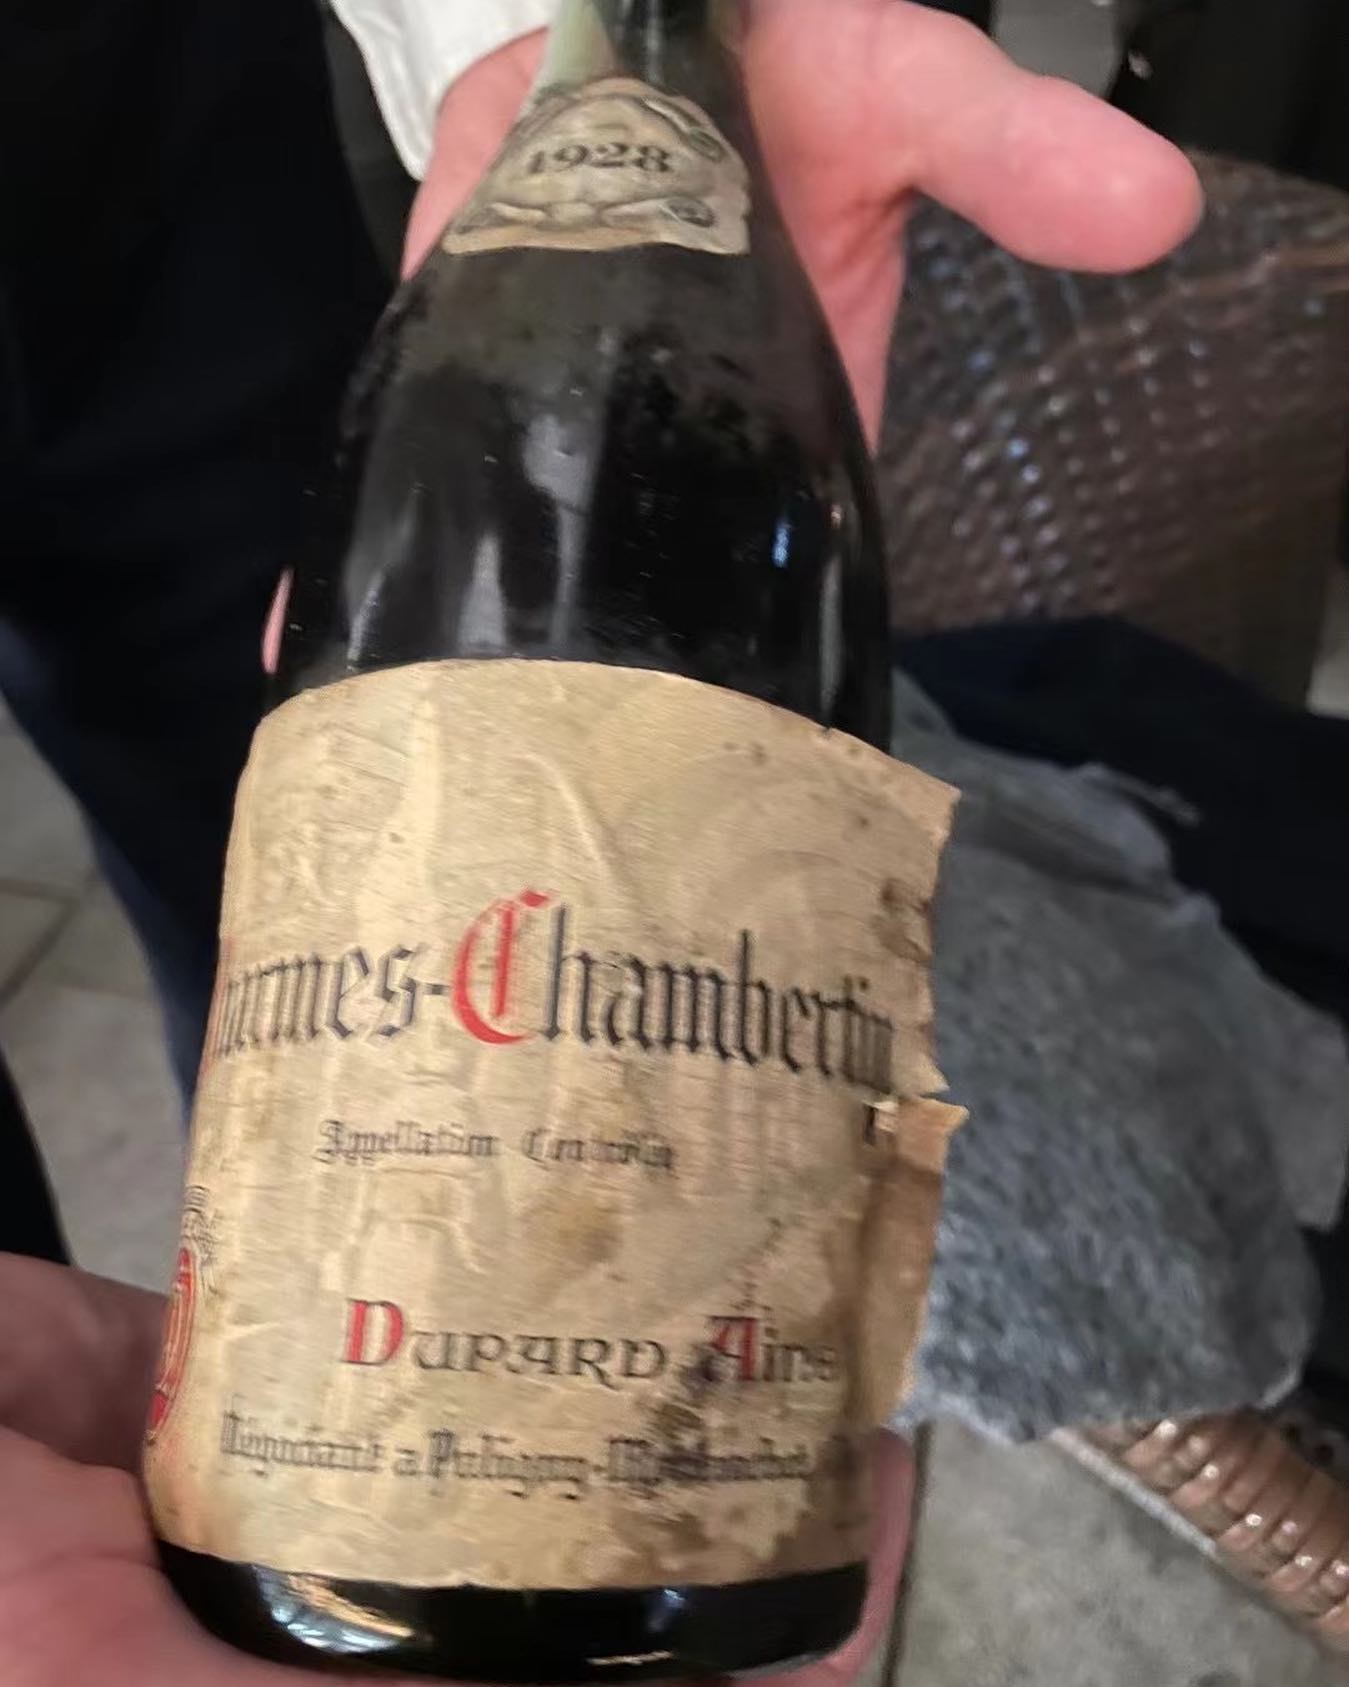 Amazing bottle from 1928. Charmes Chambertin from@Dupart #charmeschambertin #ilovepinotnoir #pinotnoir #winesofinstagram #wineofinstagram #instavine #wineporn #bourgogne #cotesdenuits #gevreychambertin #amazingwine